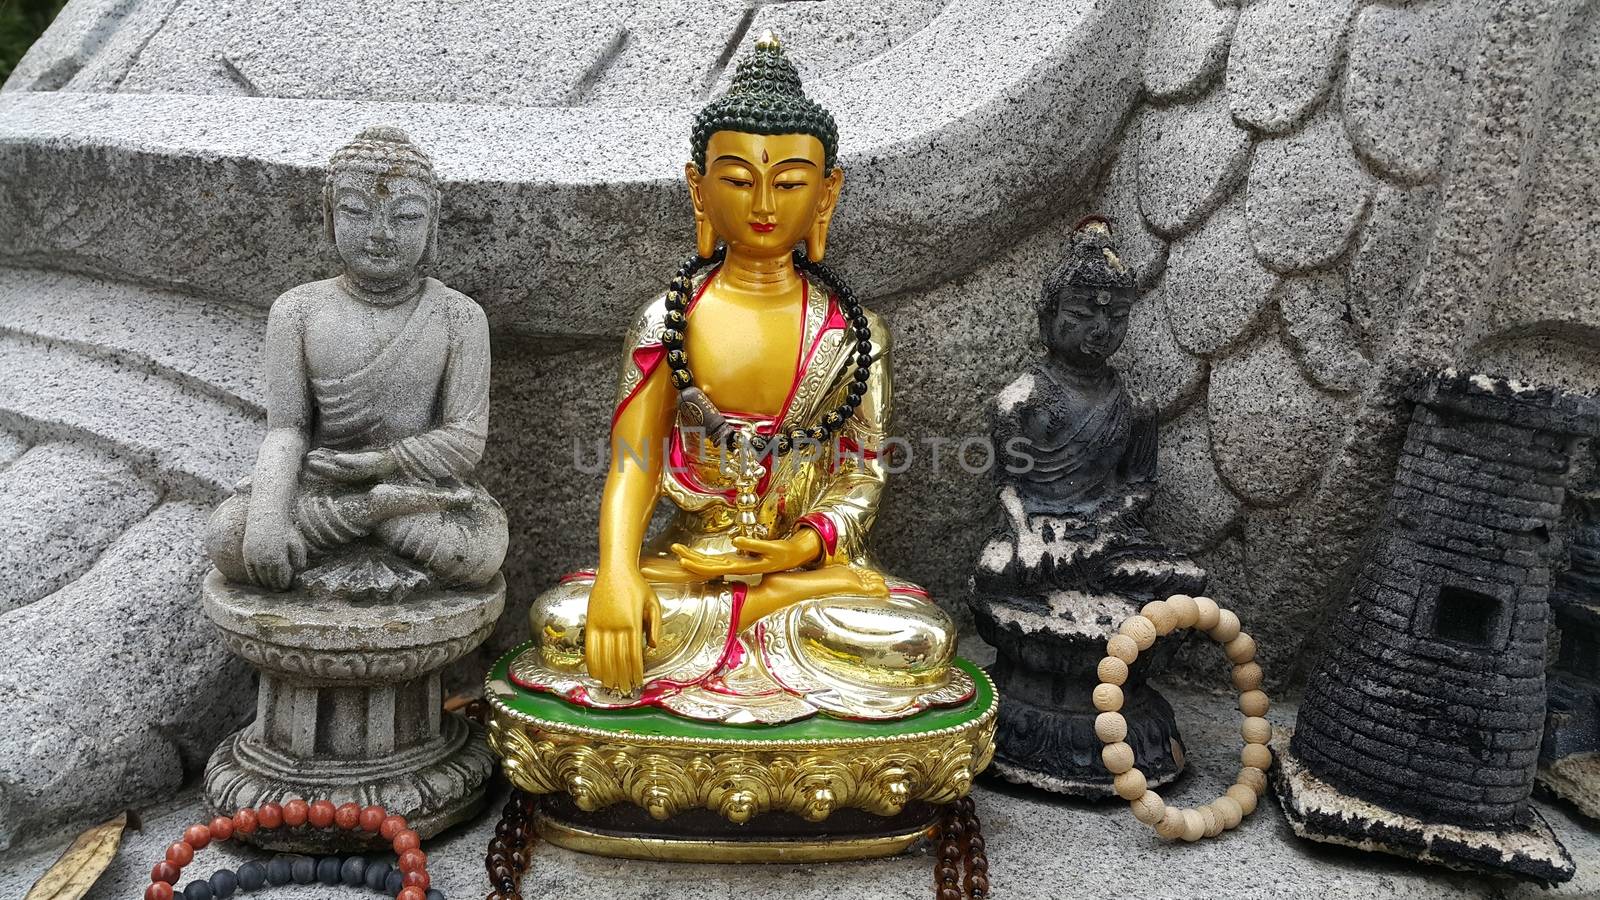 Buddha mini statue with beautiful background by Photochowk